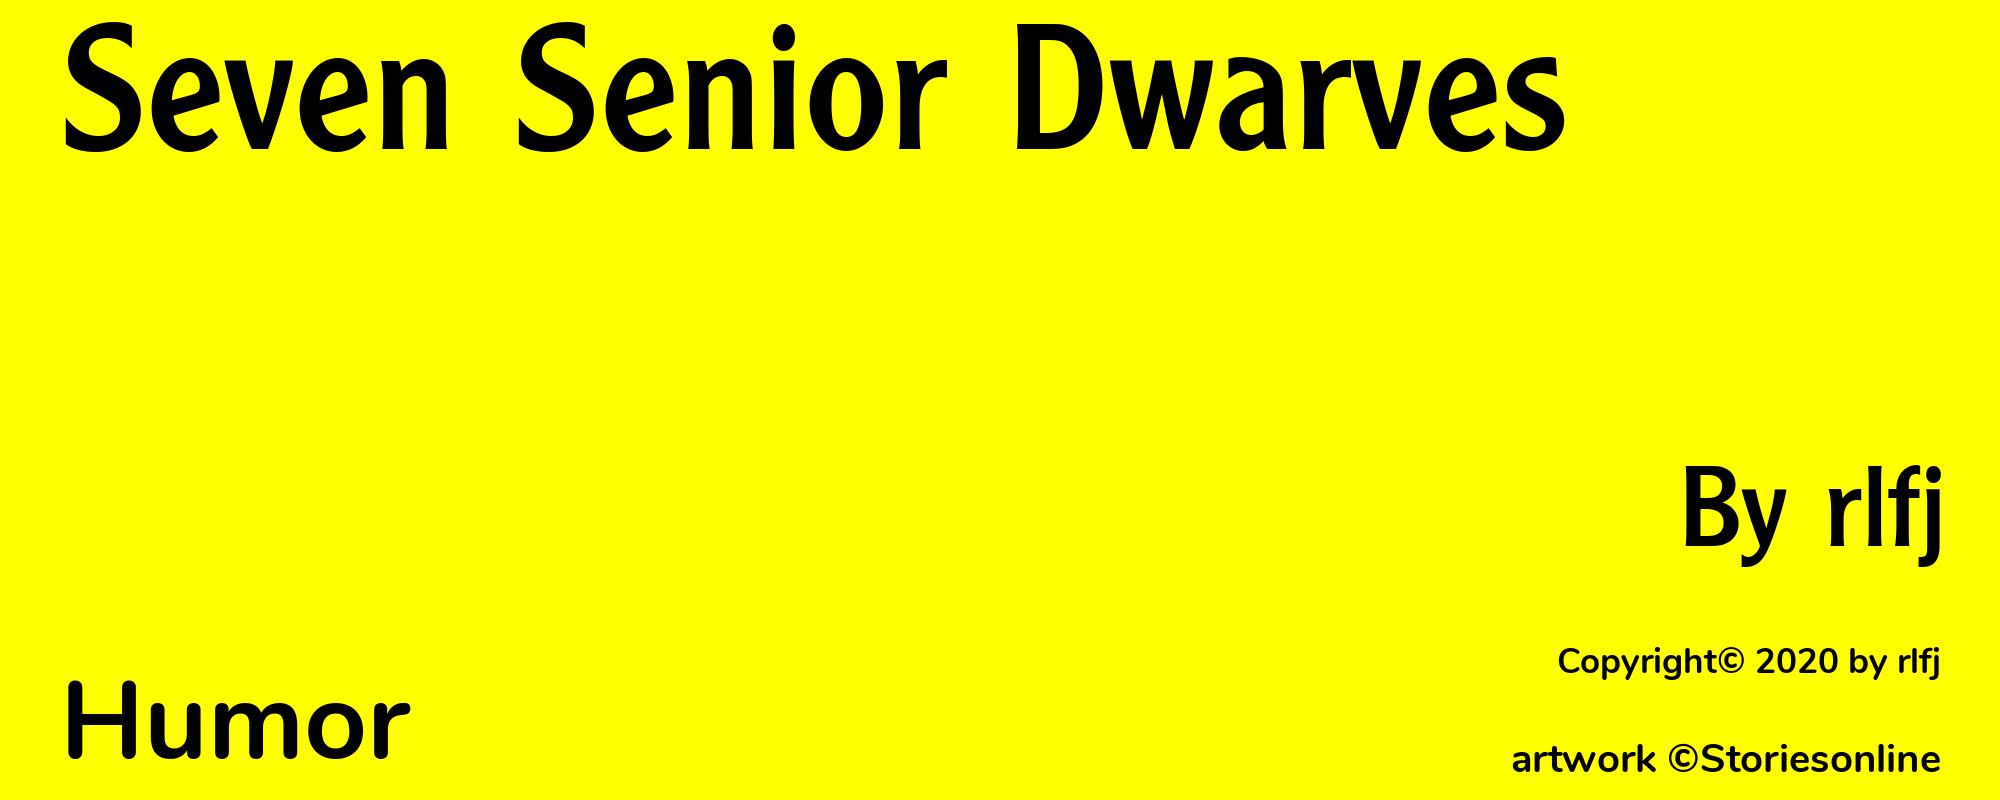 Seven Senior Dwarves - Cover